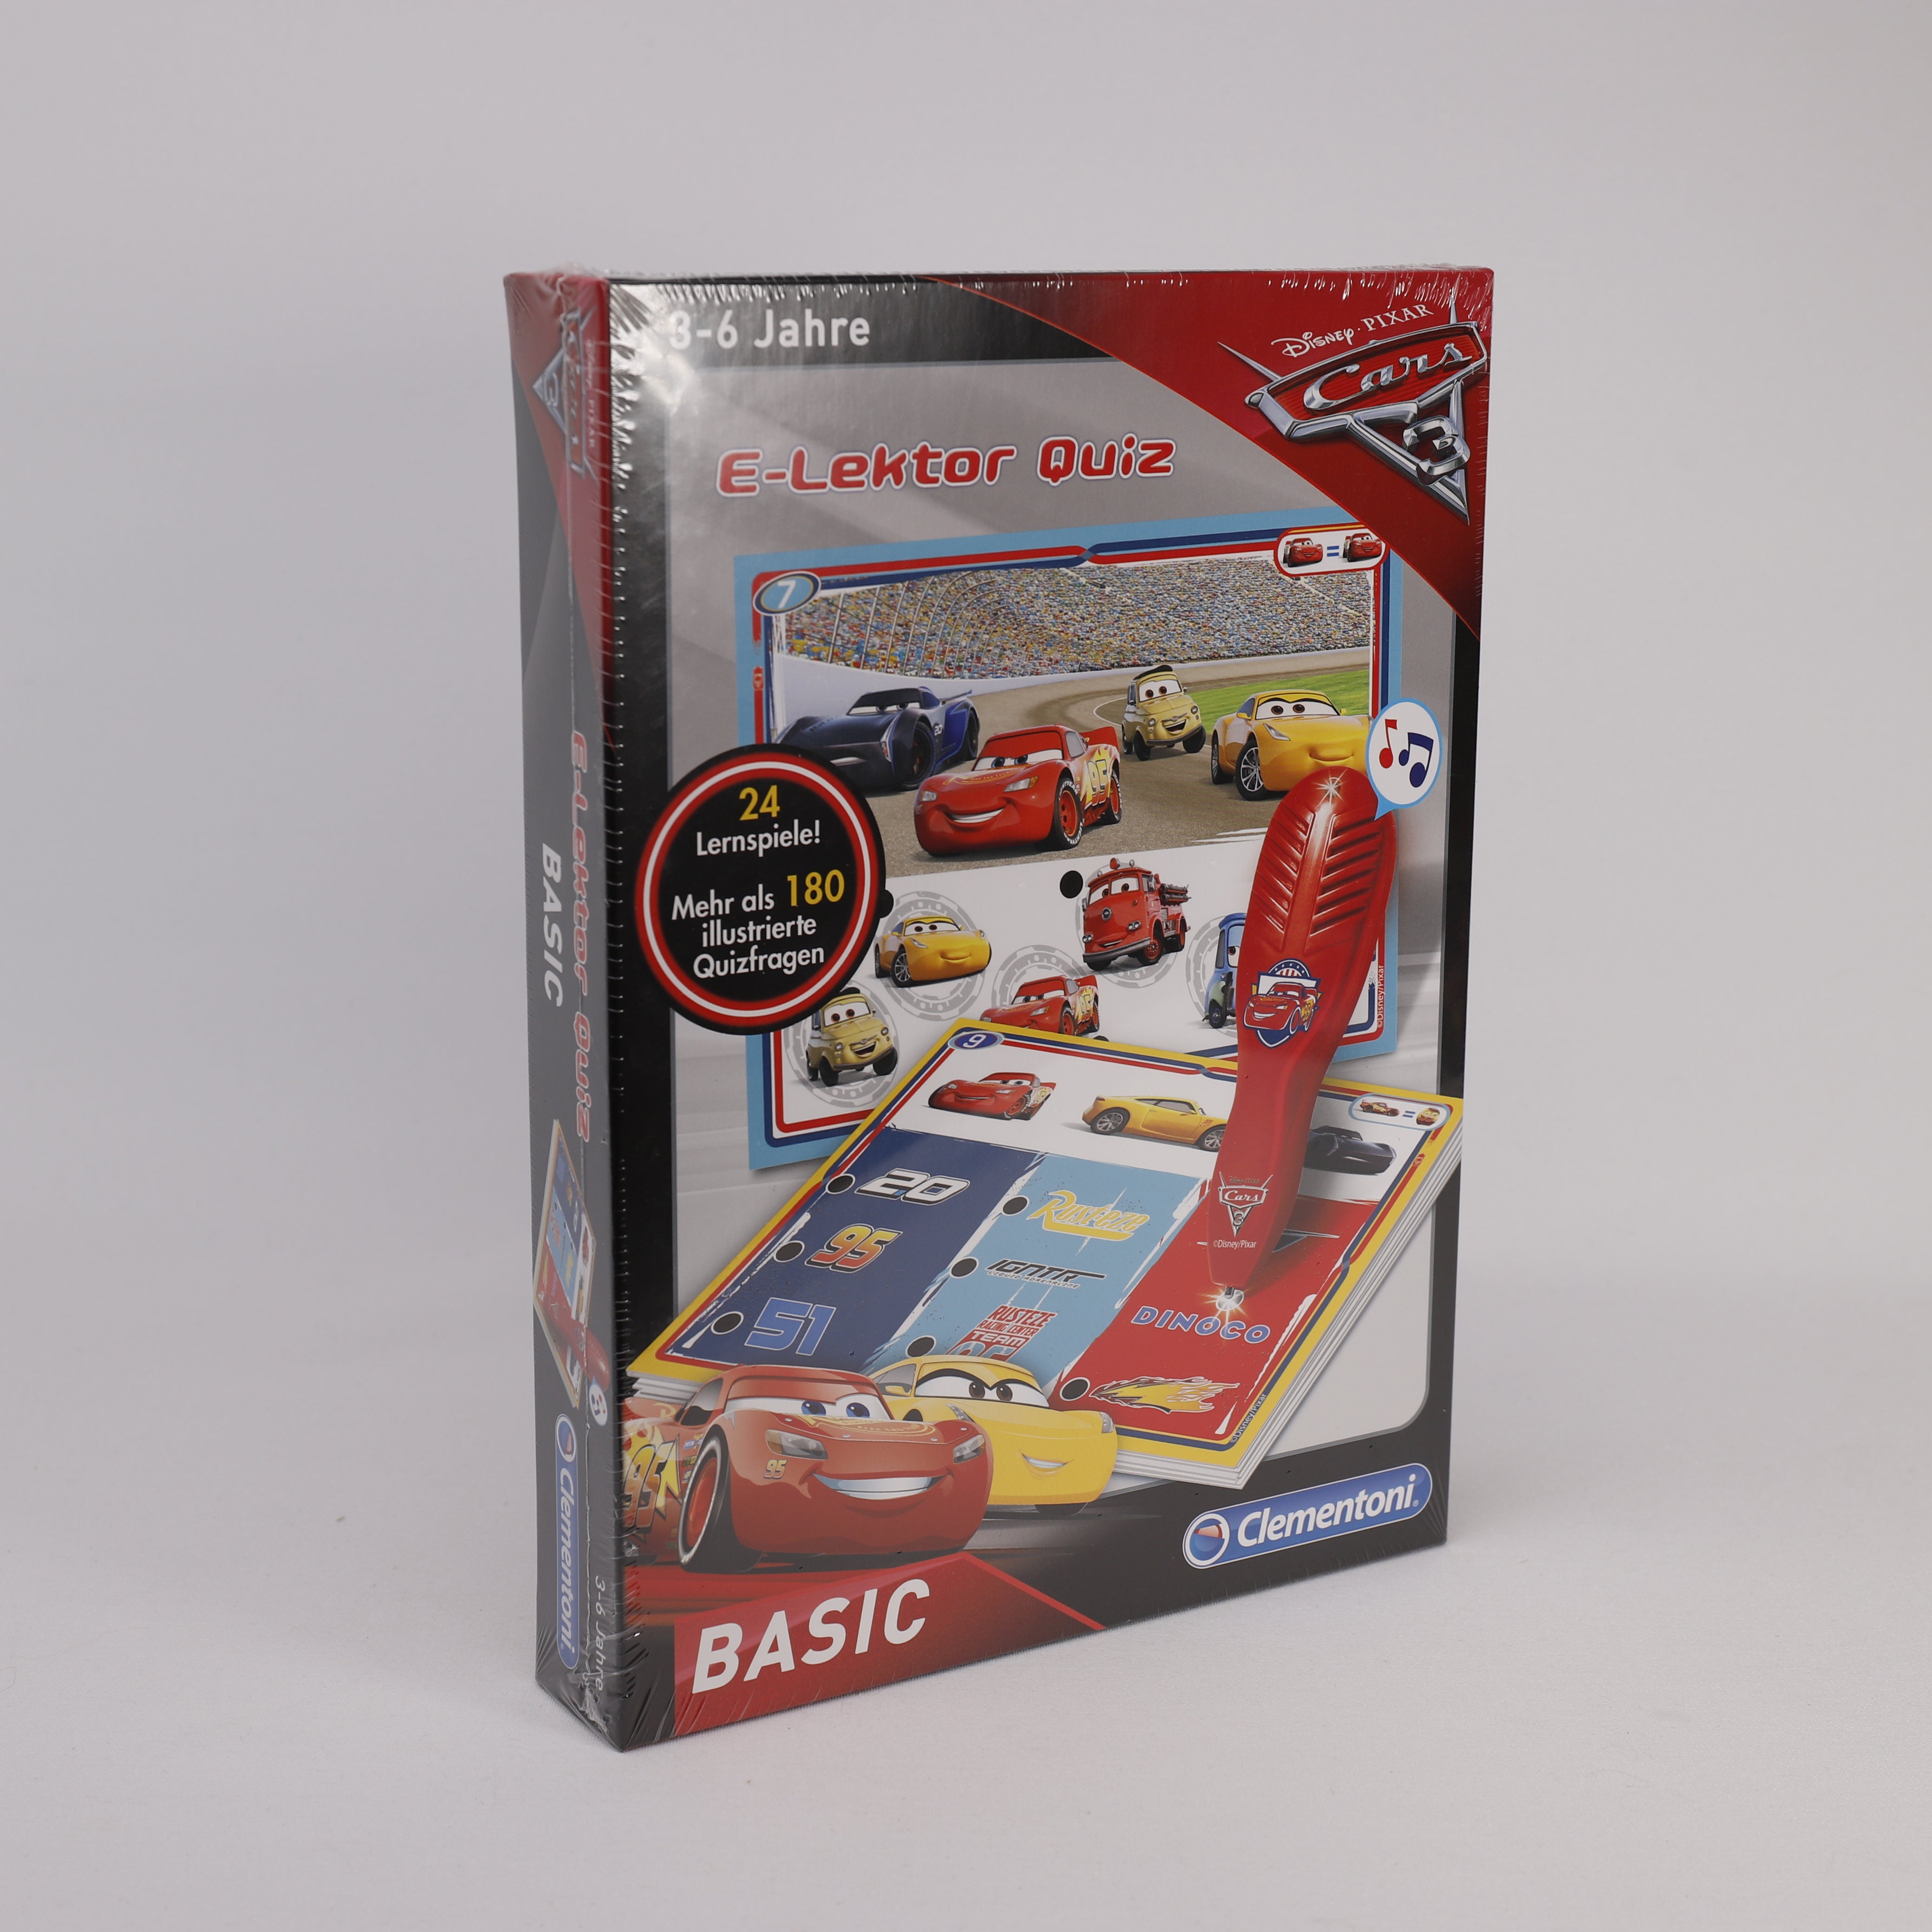 Clementoni Disney Cars E-Lektor, 24 Lernspiele, Spielzeug, Geburtstagsgeschenk.